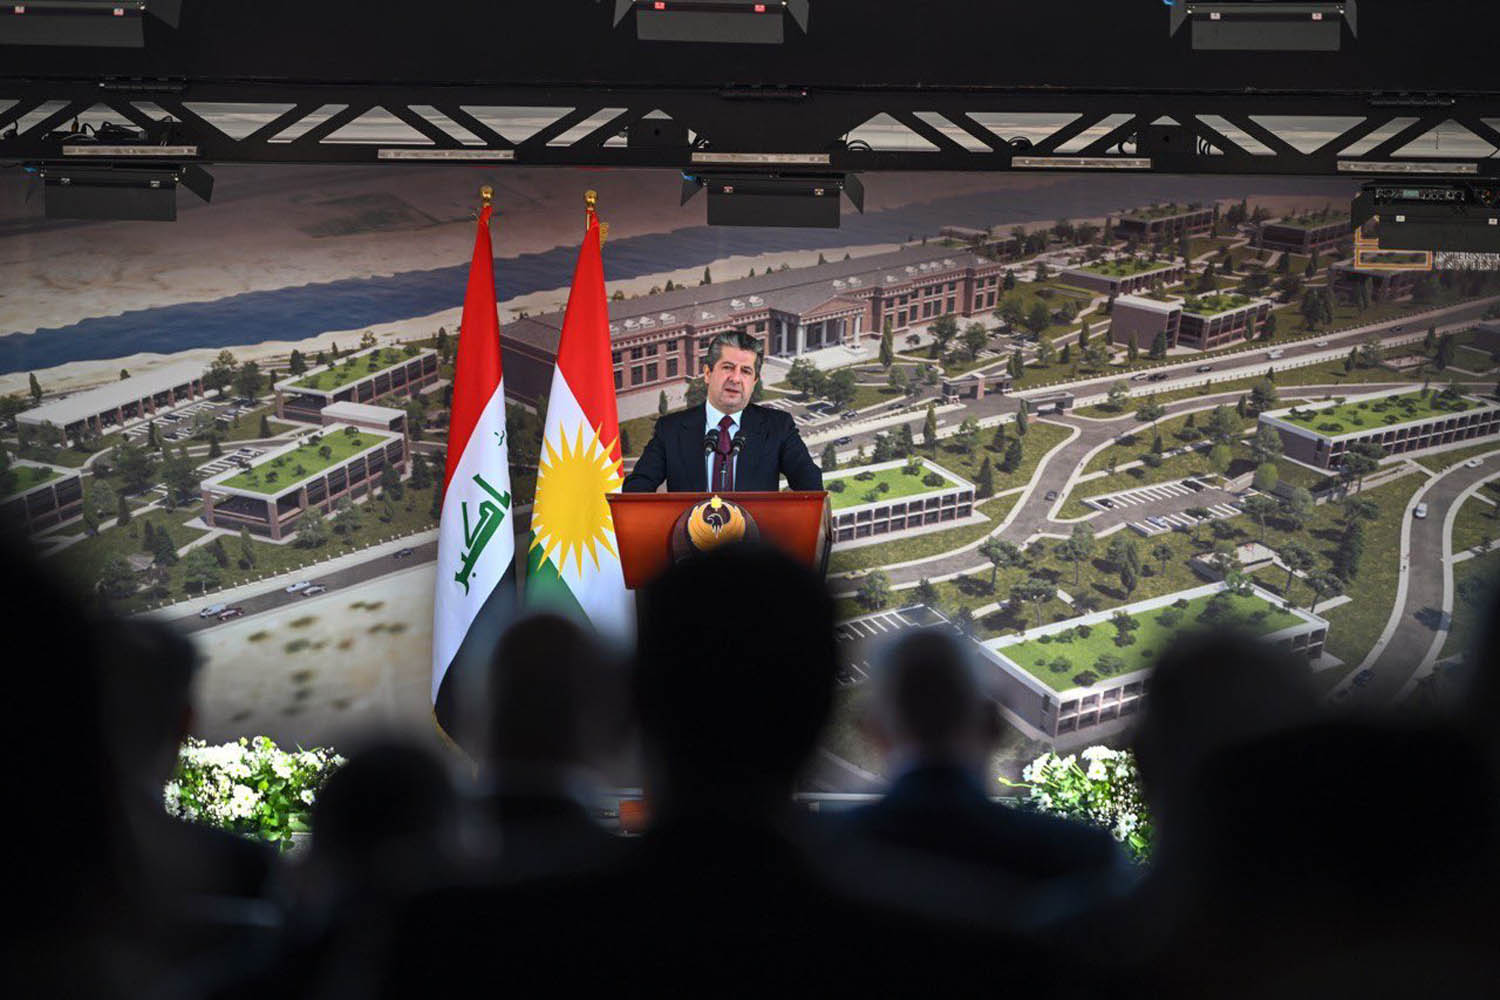 رئيس حكومة كردستان العراق مسرور بارزاني